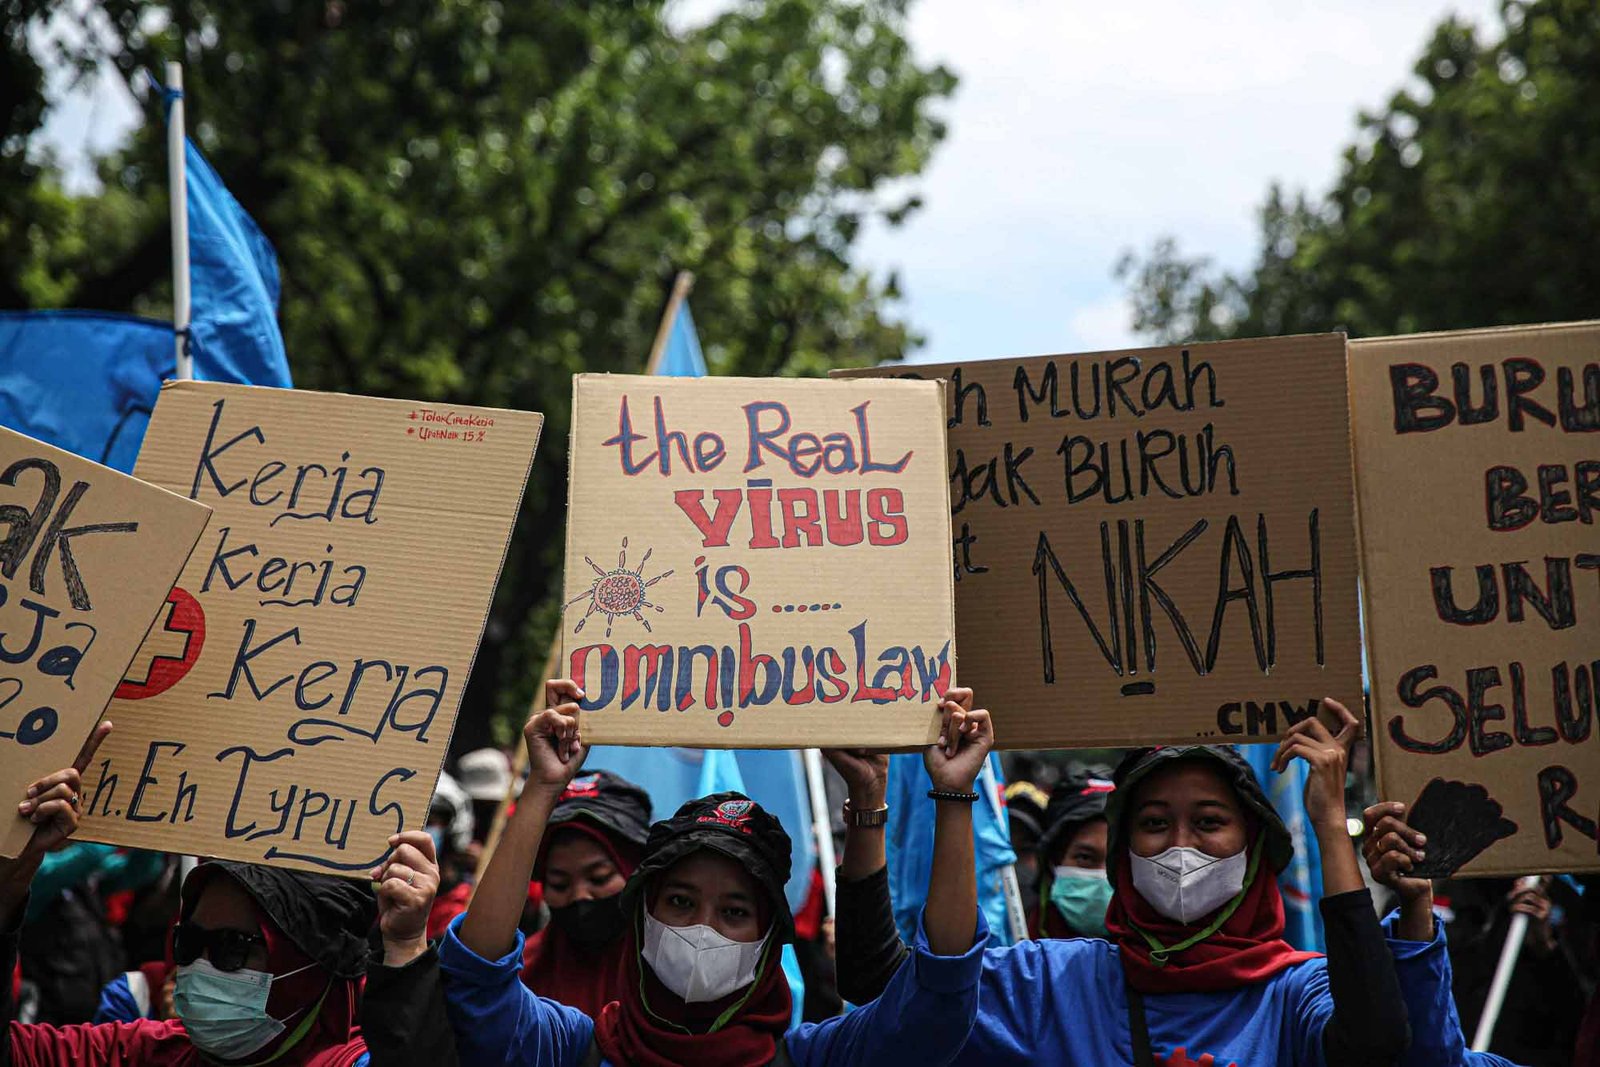 Ratusan buruh gabungan menggelar aksi di kawasan Patung Arjuna Wijaya, Jakarta, Kamis (25/11/2021). Dalam aksinya Mereka menuntut pembatalan Omnibus Law - Undang-Undang Cipta Kerja dan kenaikan upah 2022. (Issak Ramdhani / fin.co.id)